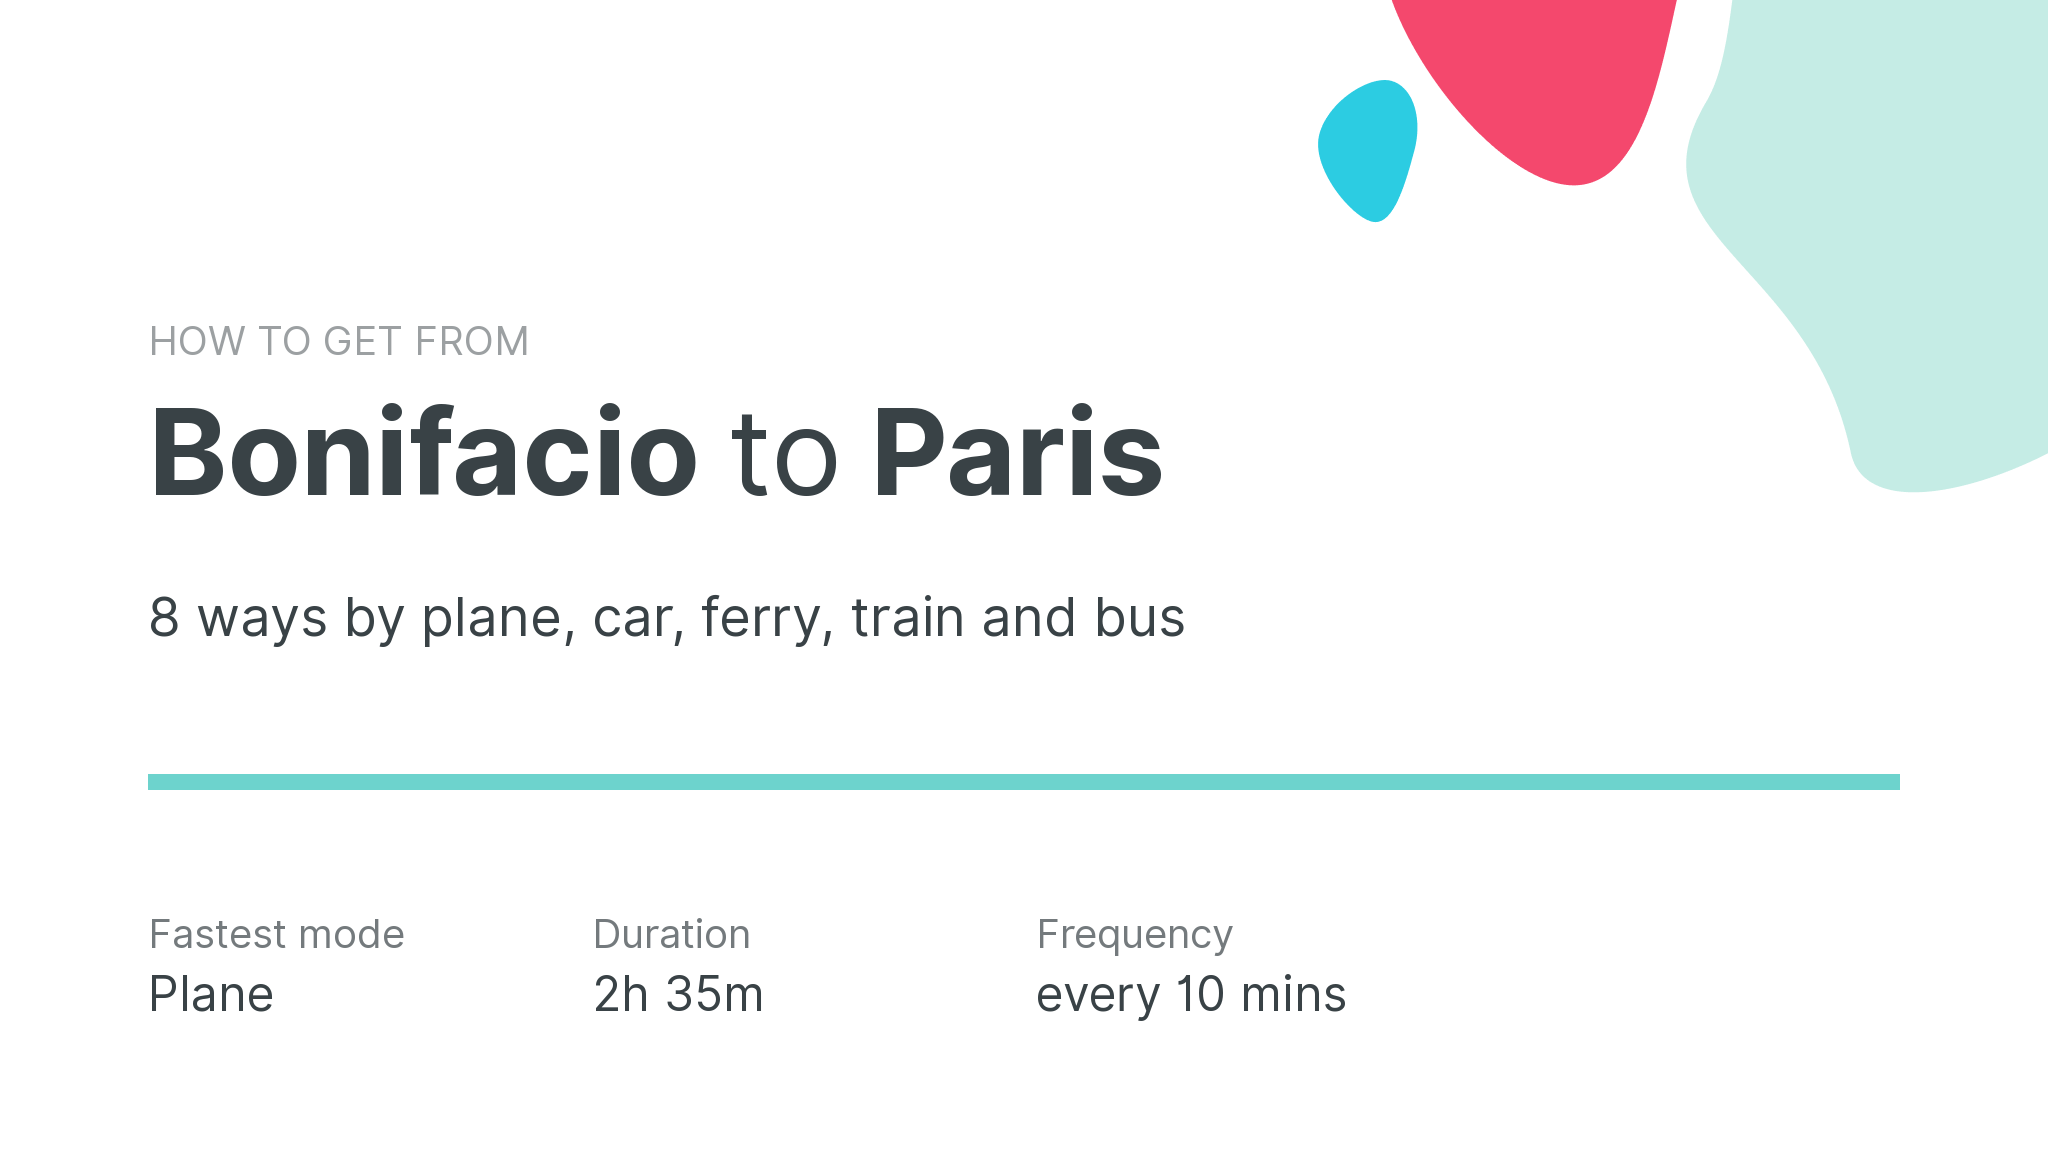 How do I get from Bonifacio to Paris